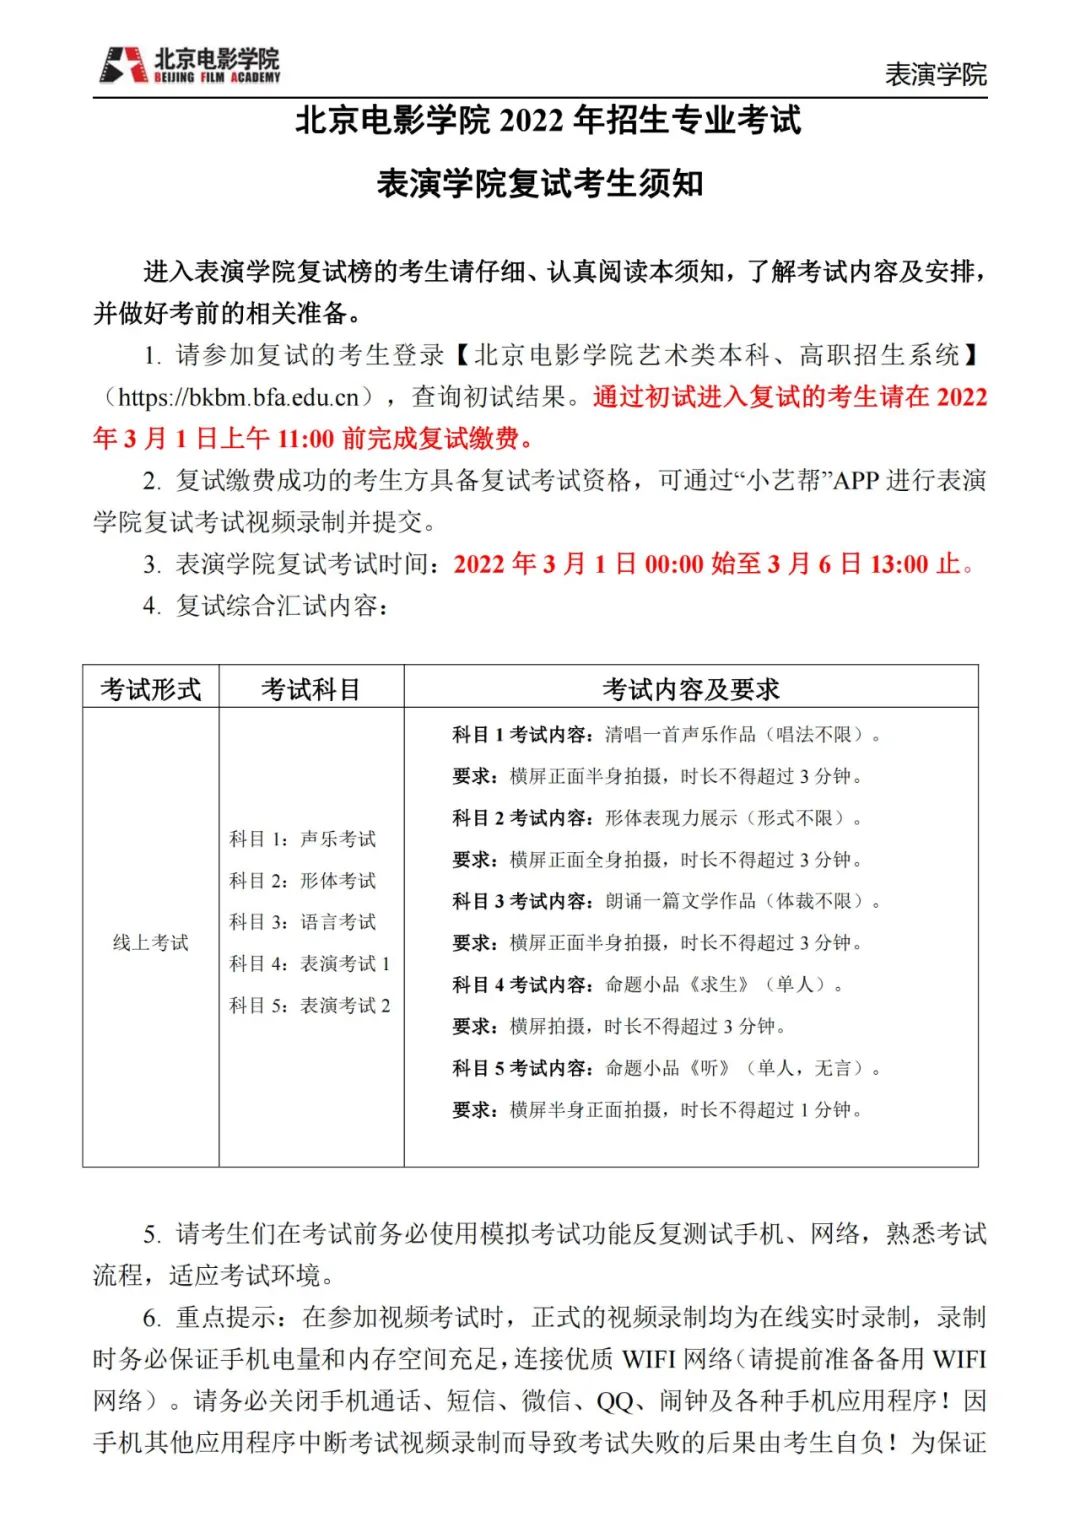 中央戏剧学院、北京电影学院2022初试结果已发布 (http://www.cngai.com/) 艺教资讯 第43张